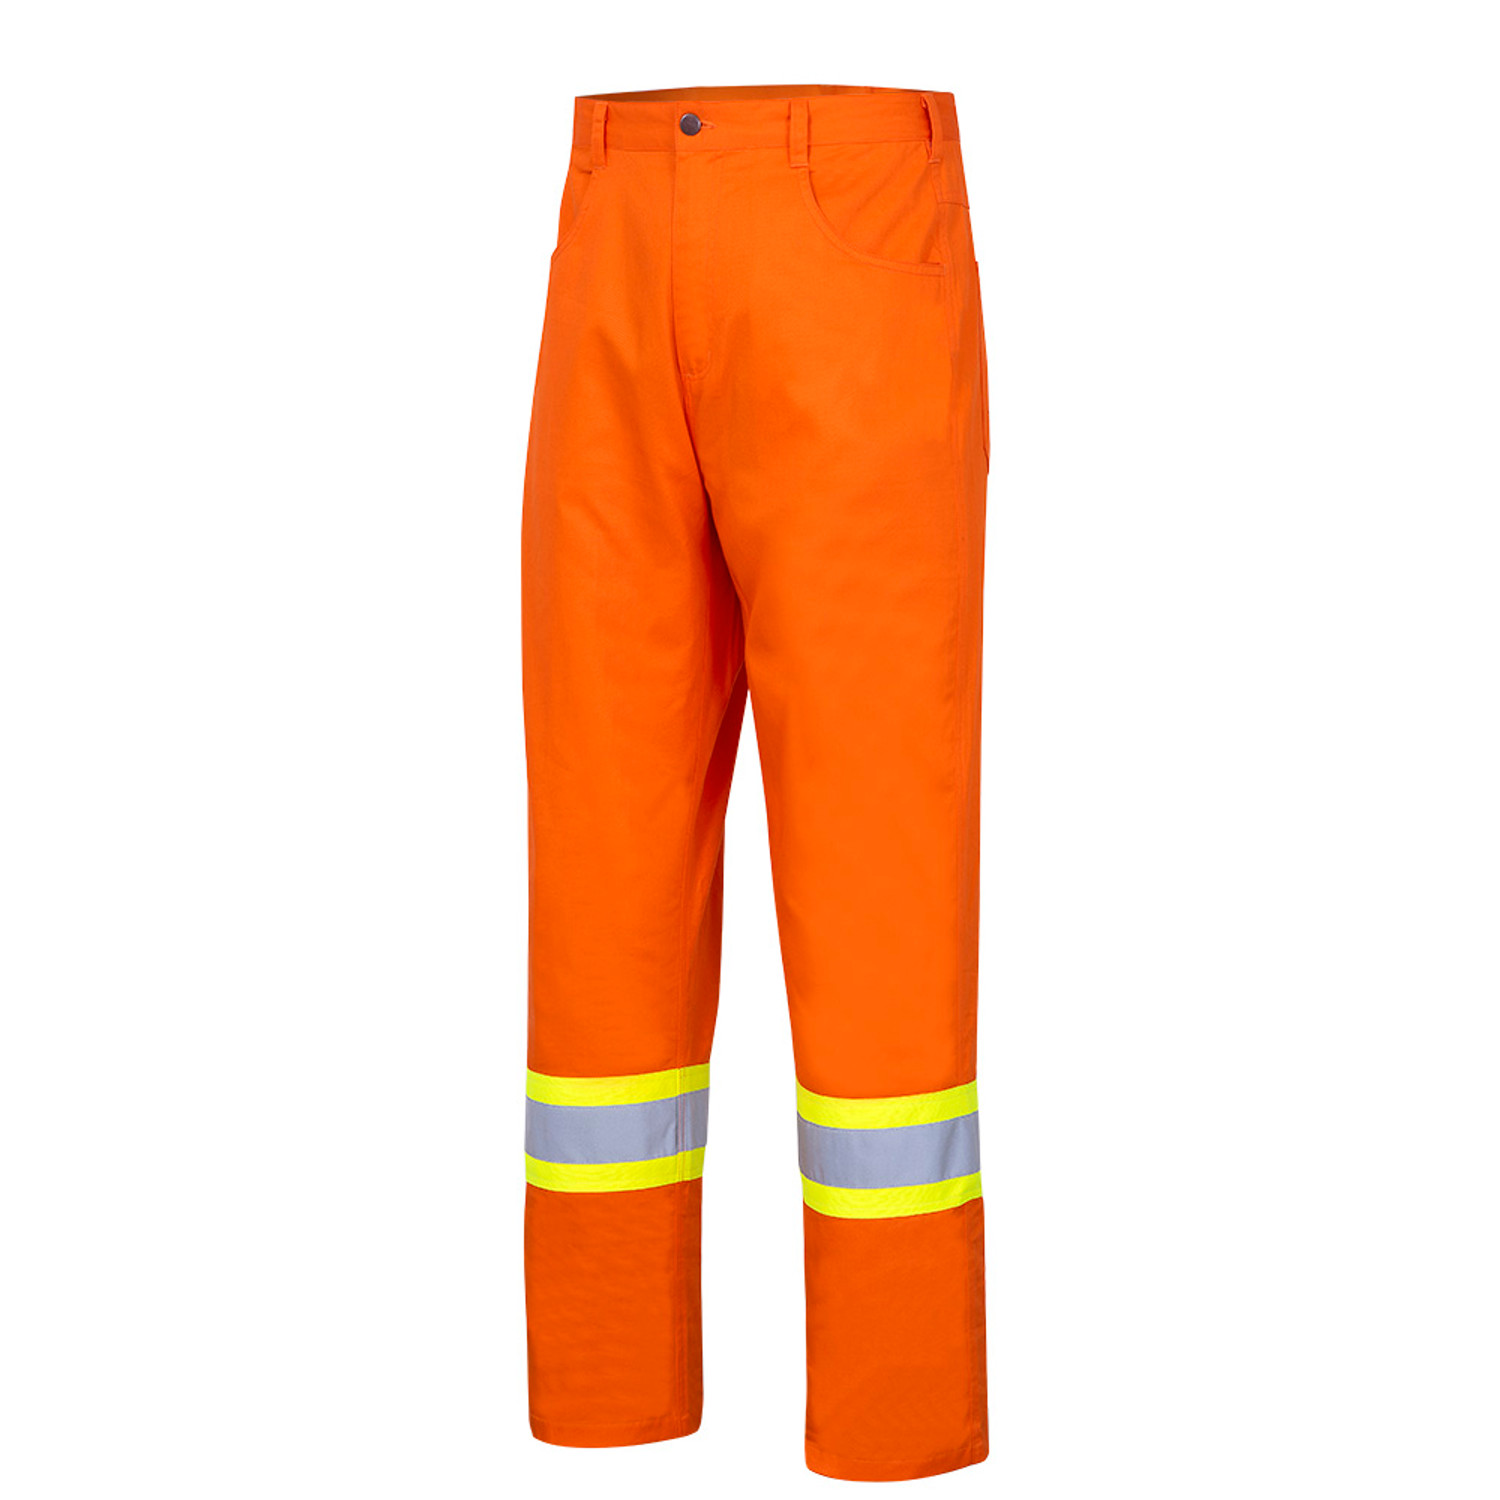 Pioneer 4461 Ultra Cool Cotton Safety Pants - HI-Viz Orange